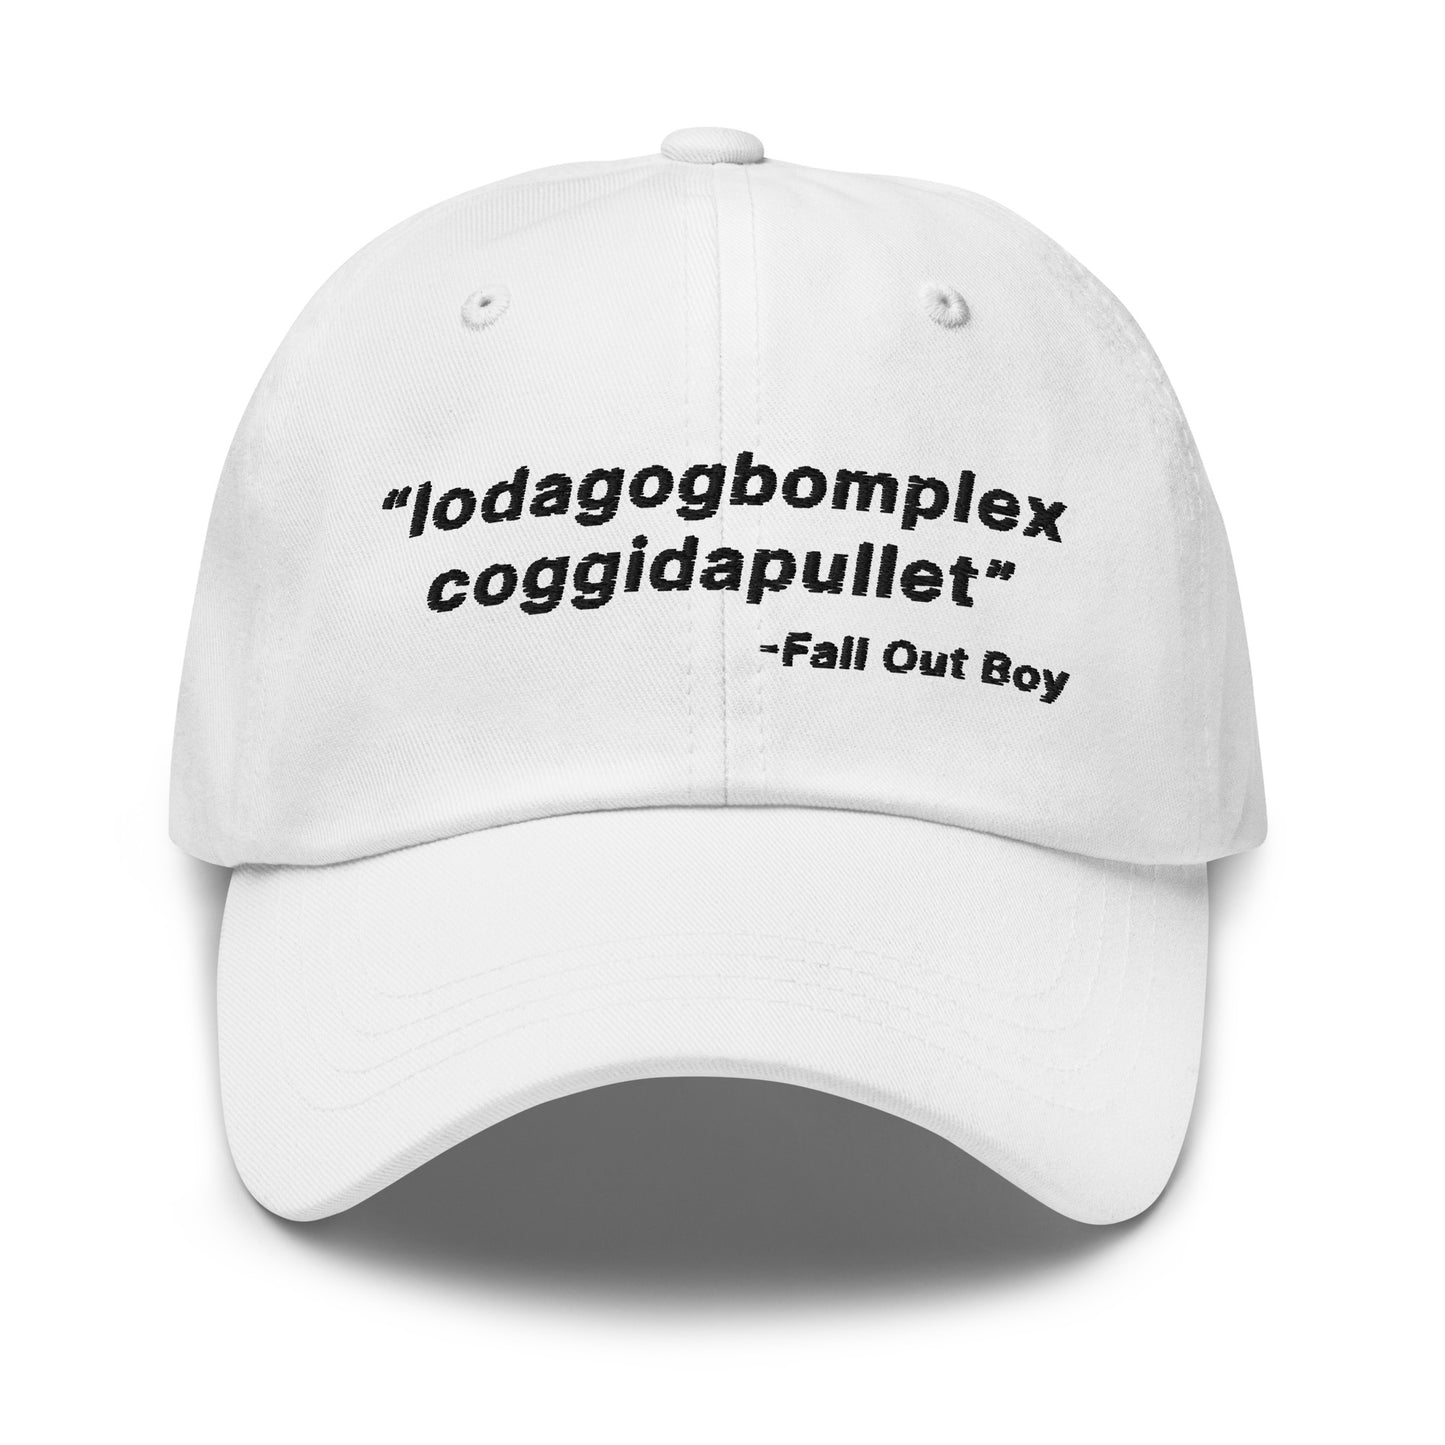 Lodagogbomplex Coggidapullet (Fall Out Boy) hat